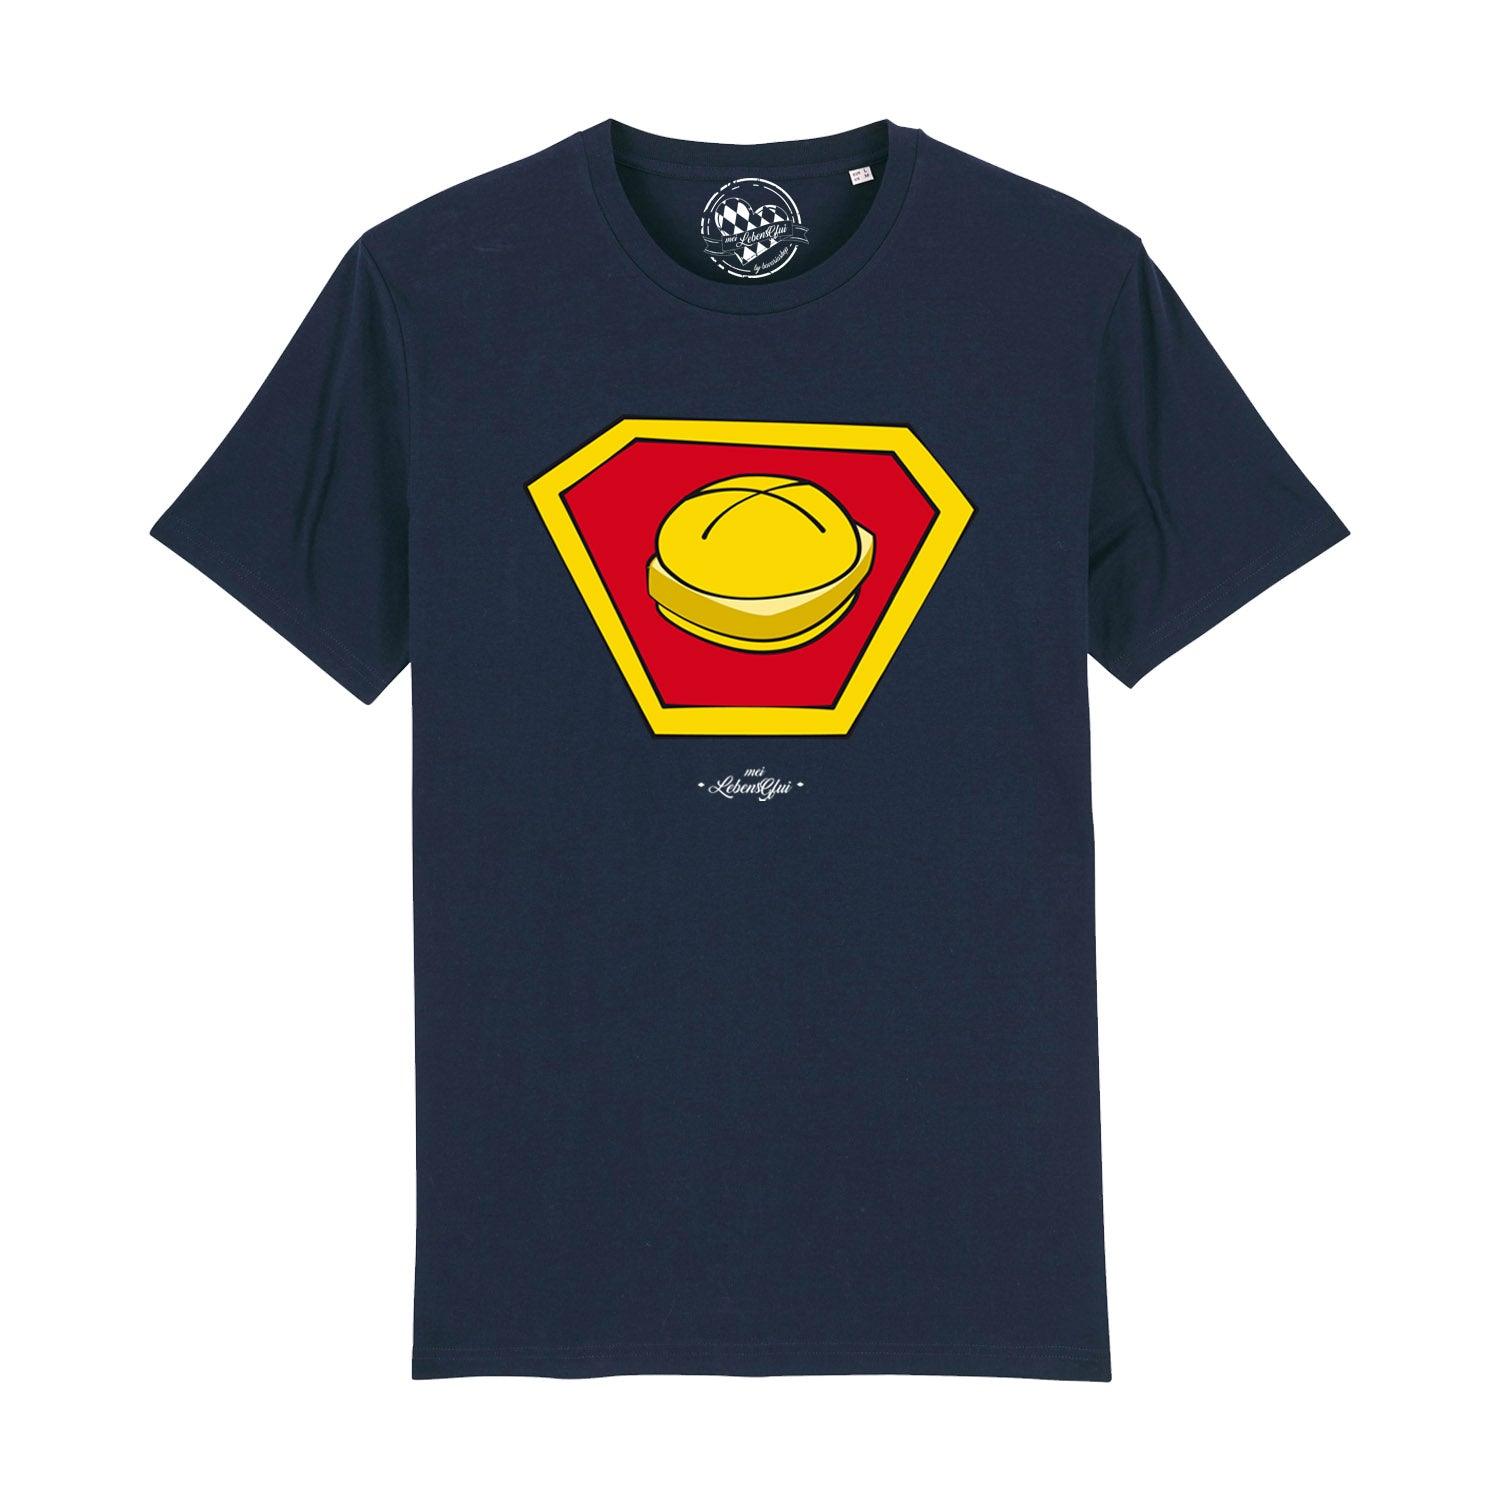 Herren T-Shirt "Super-Lewakaas" - bavariashop - mei LebensGfui